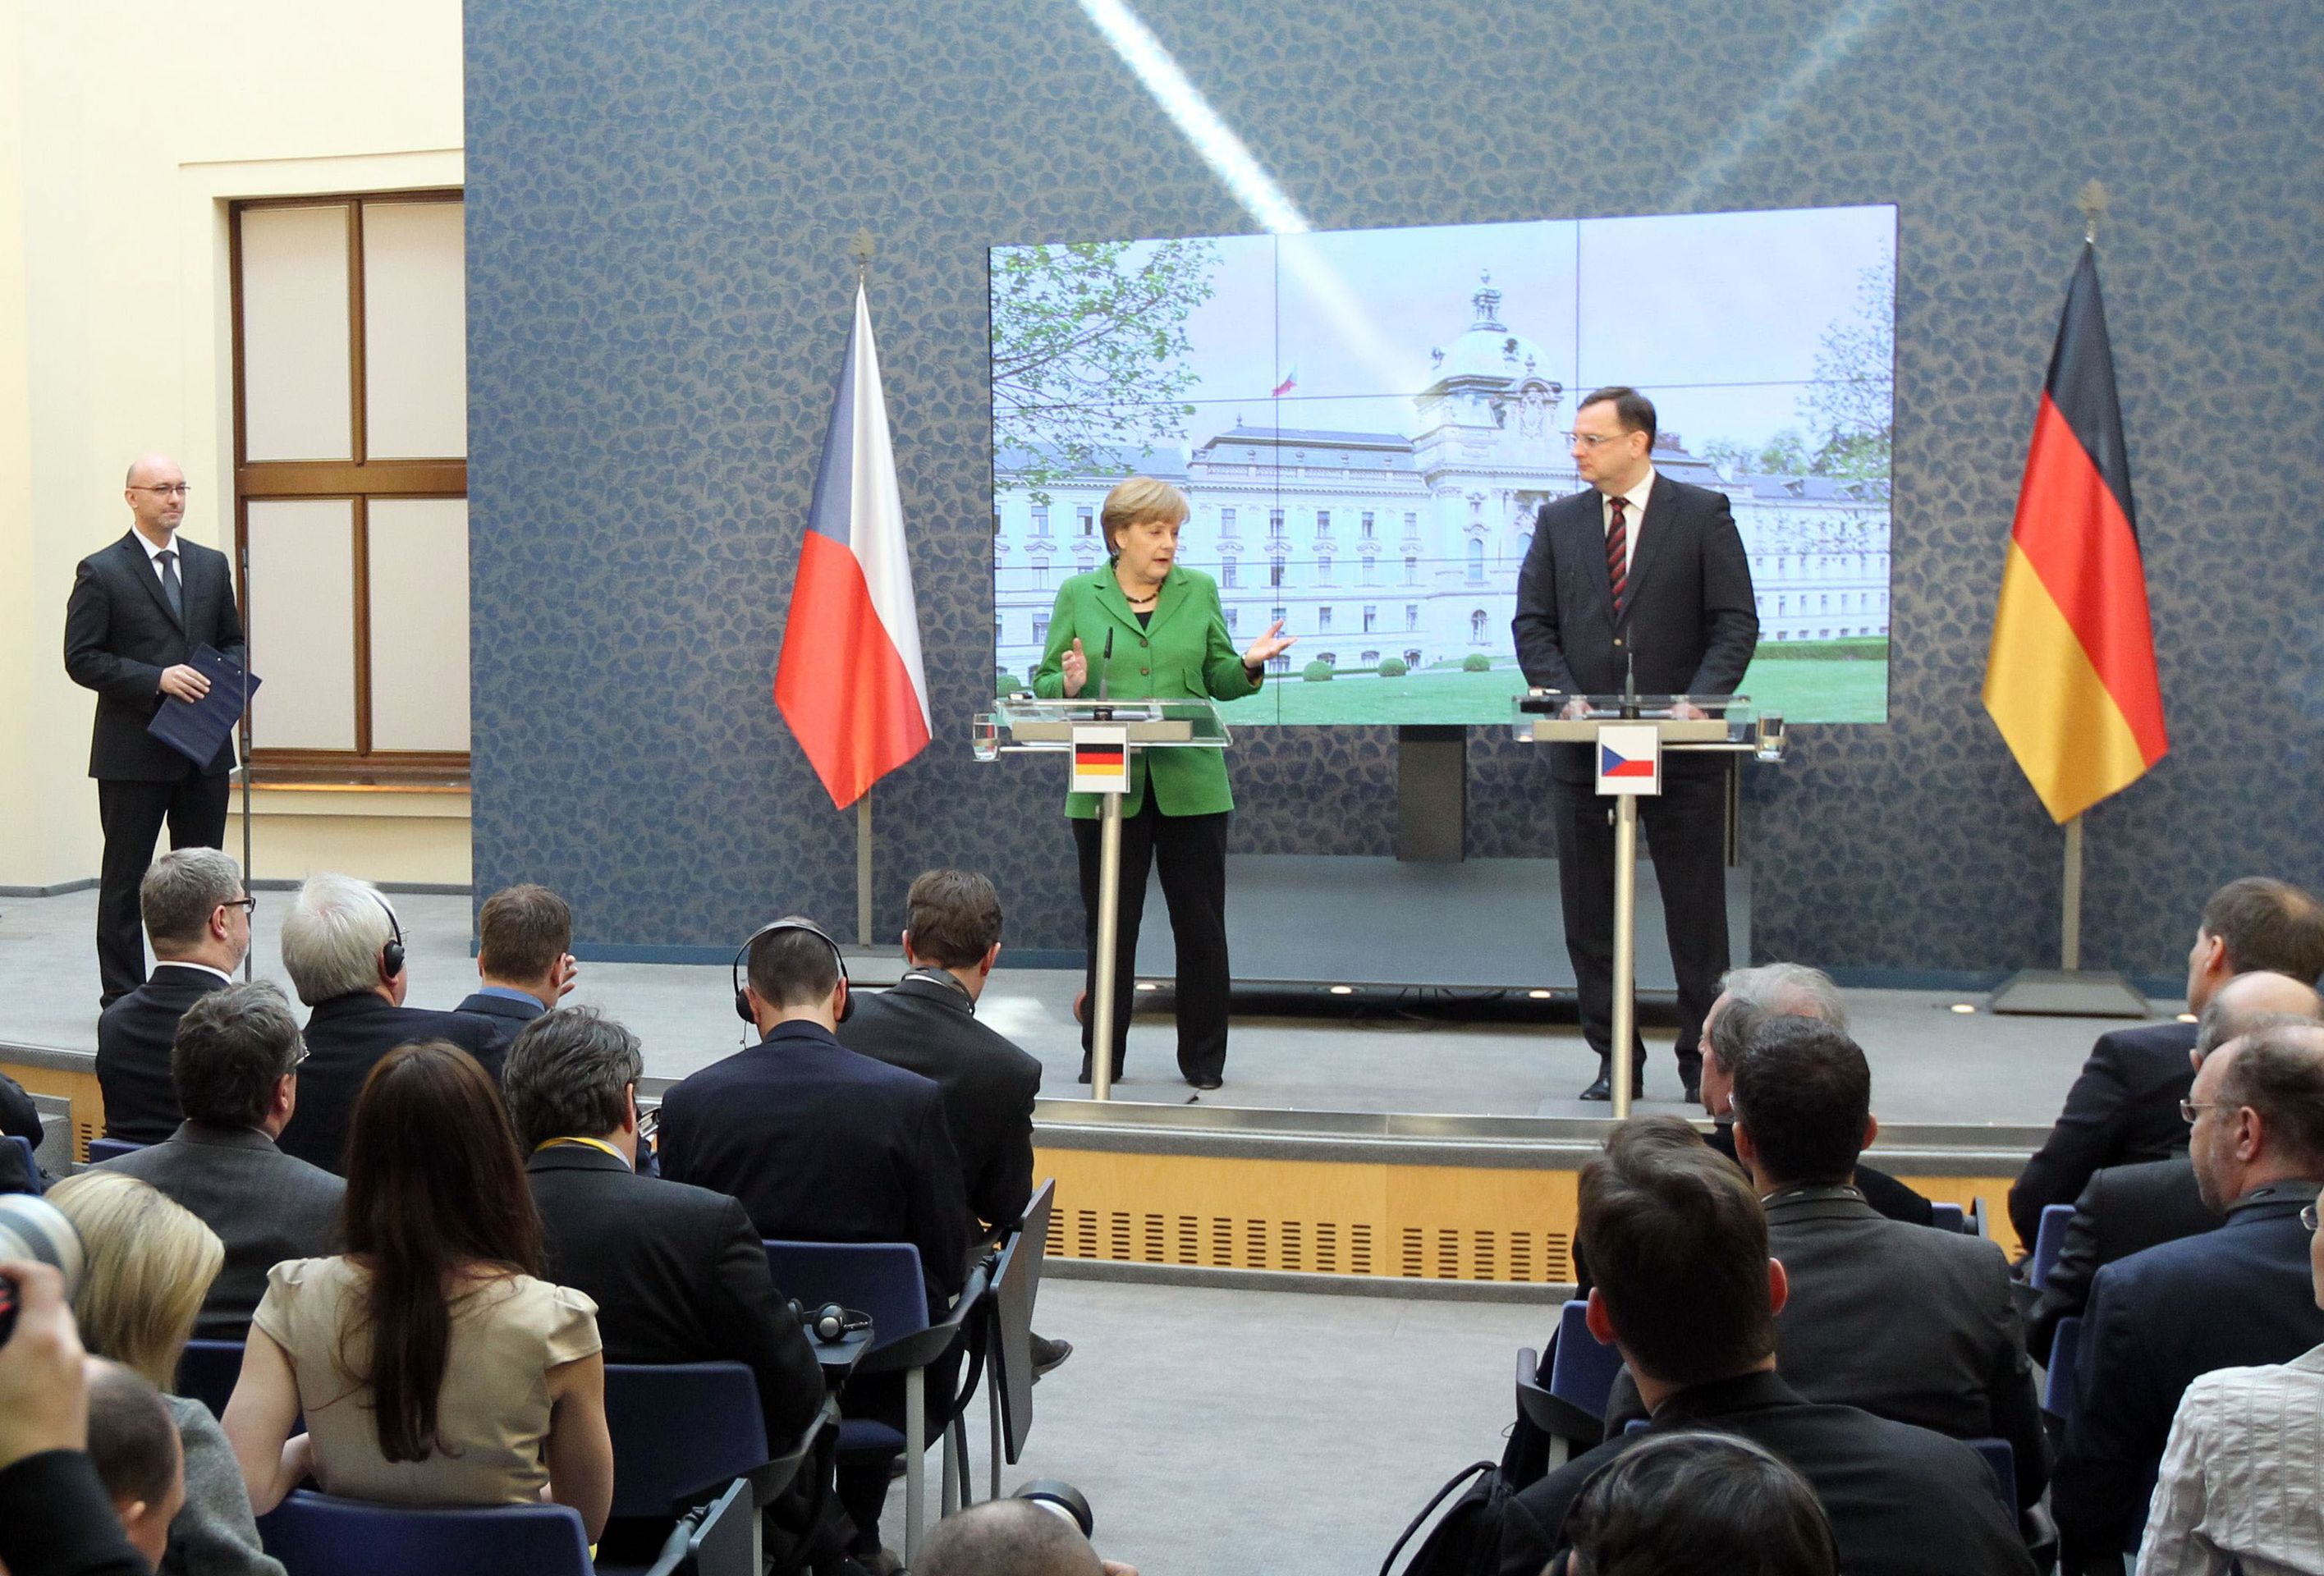 Angela Merkelová v Praze - 2 - Angela Merkelová v Praze (9/11)